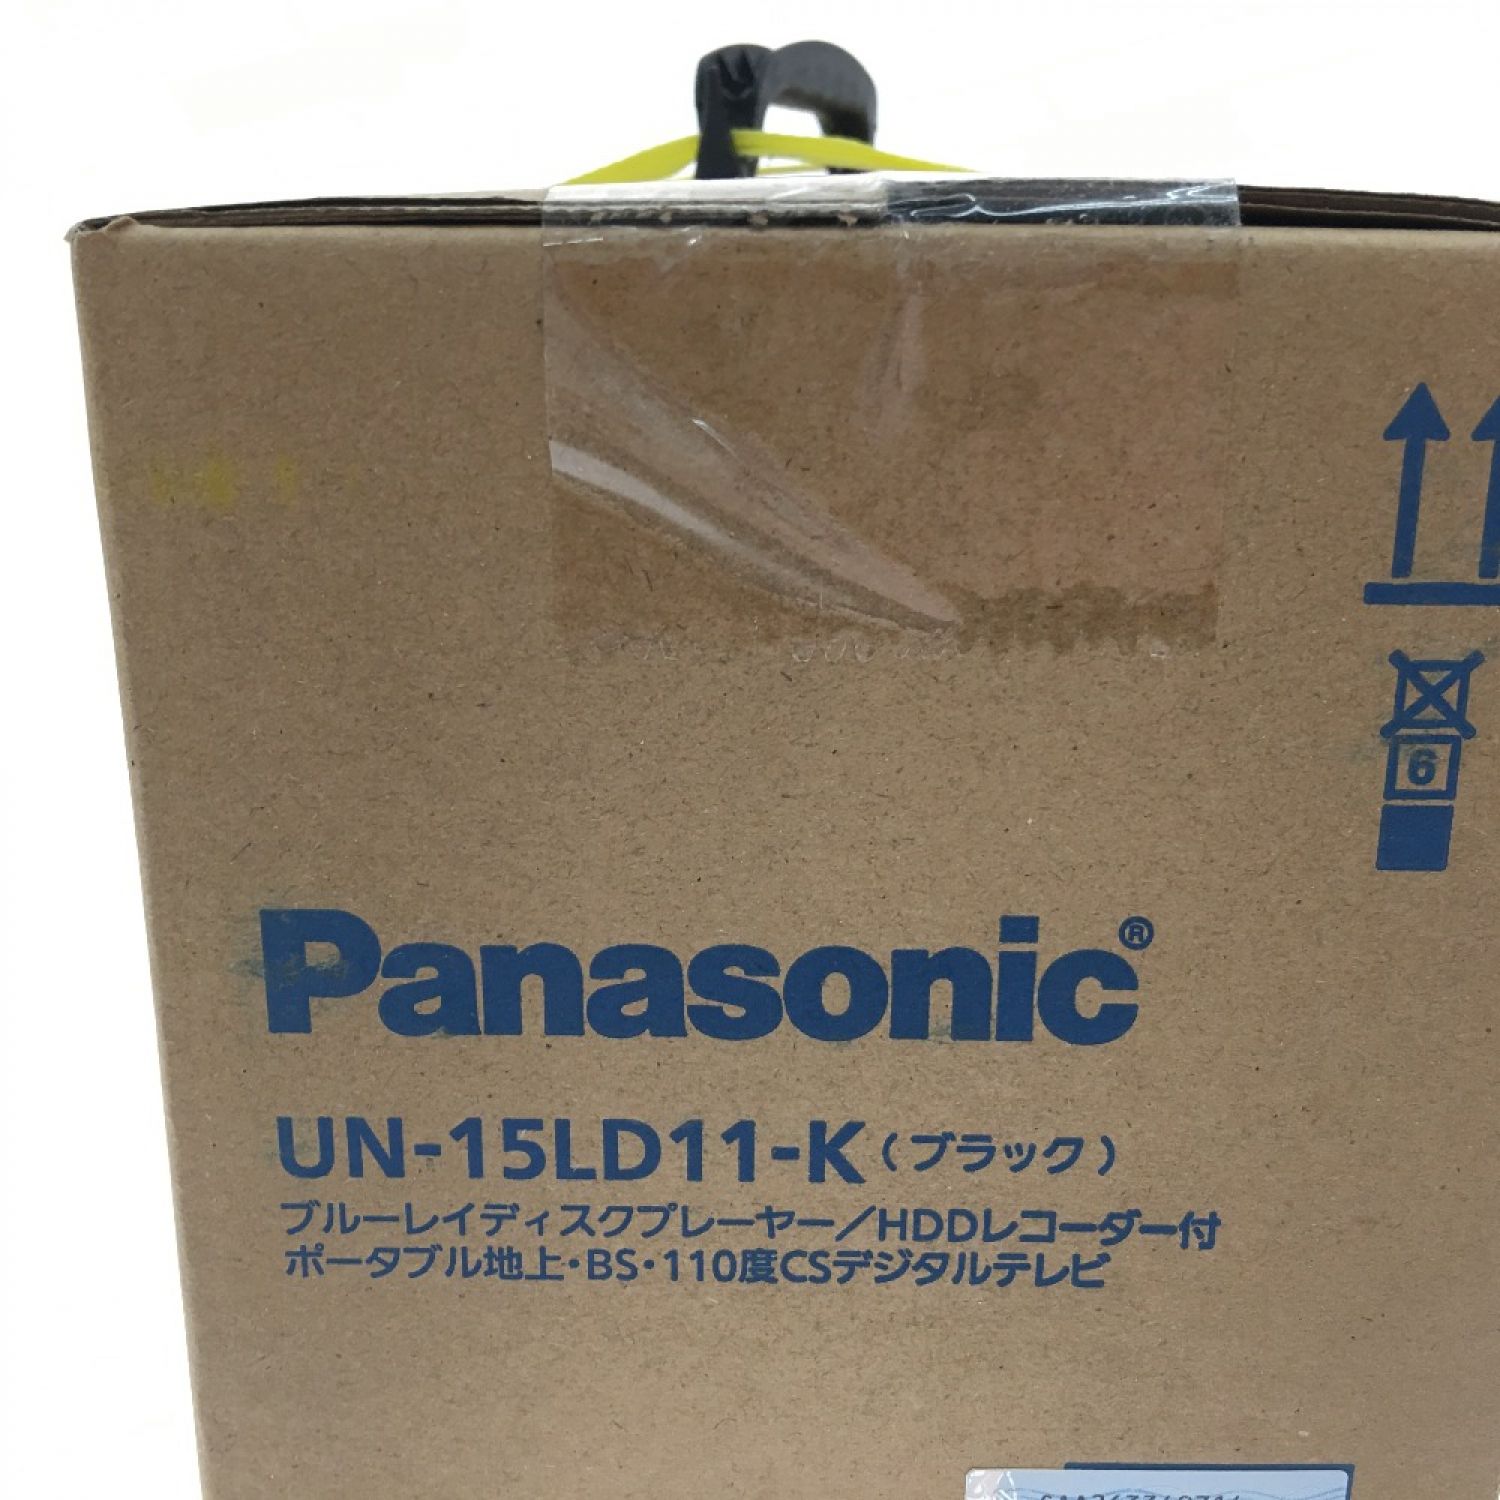 中古】 Panasonic パナソニック プライベート・ビエラ VIERA HDD500GB